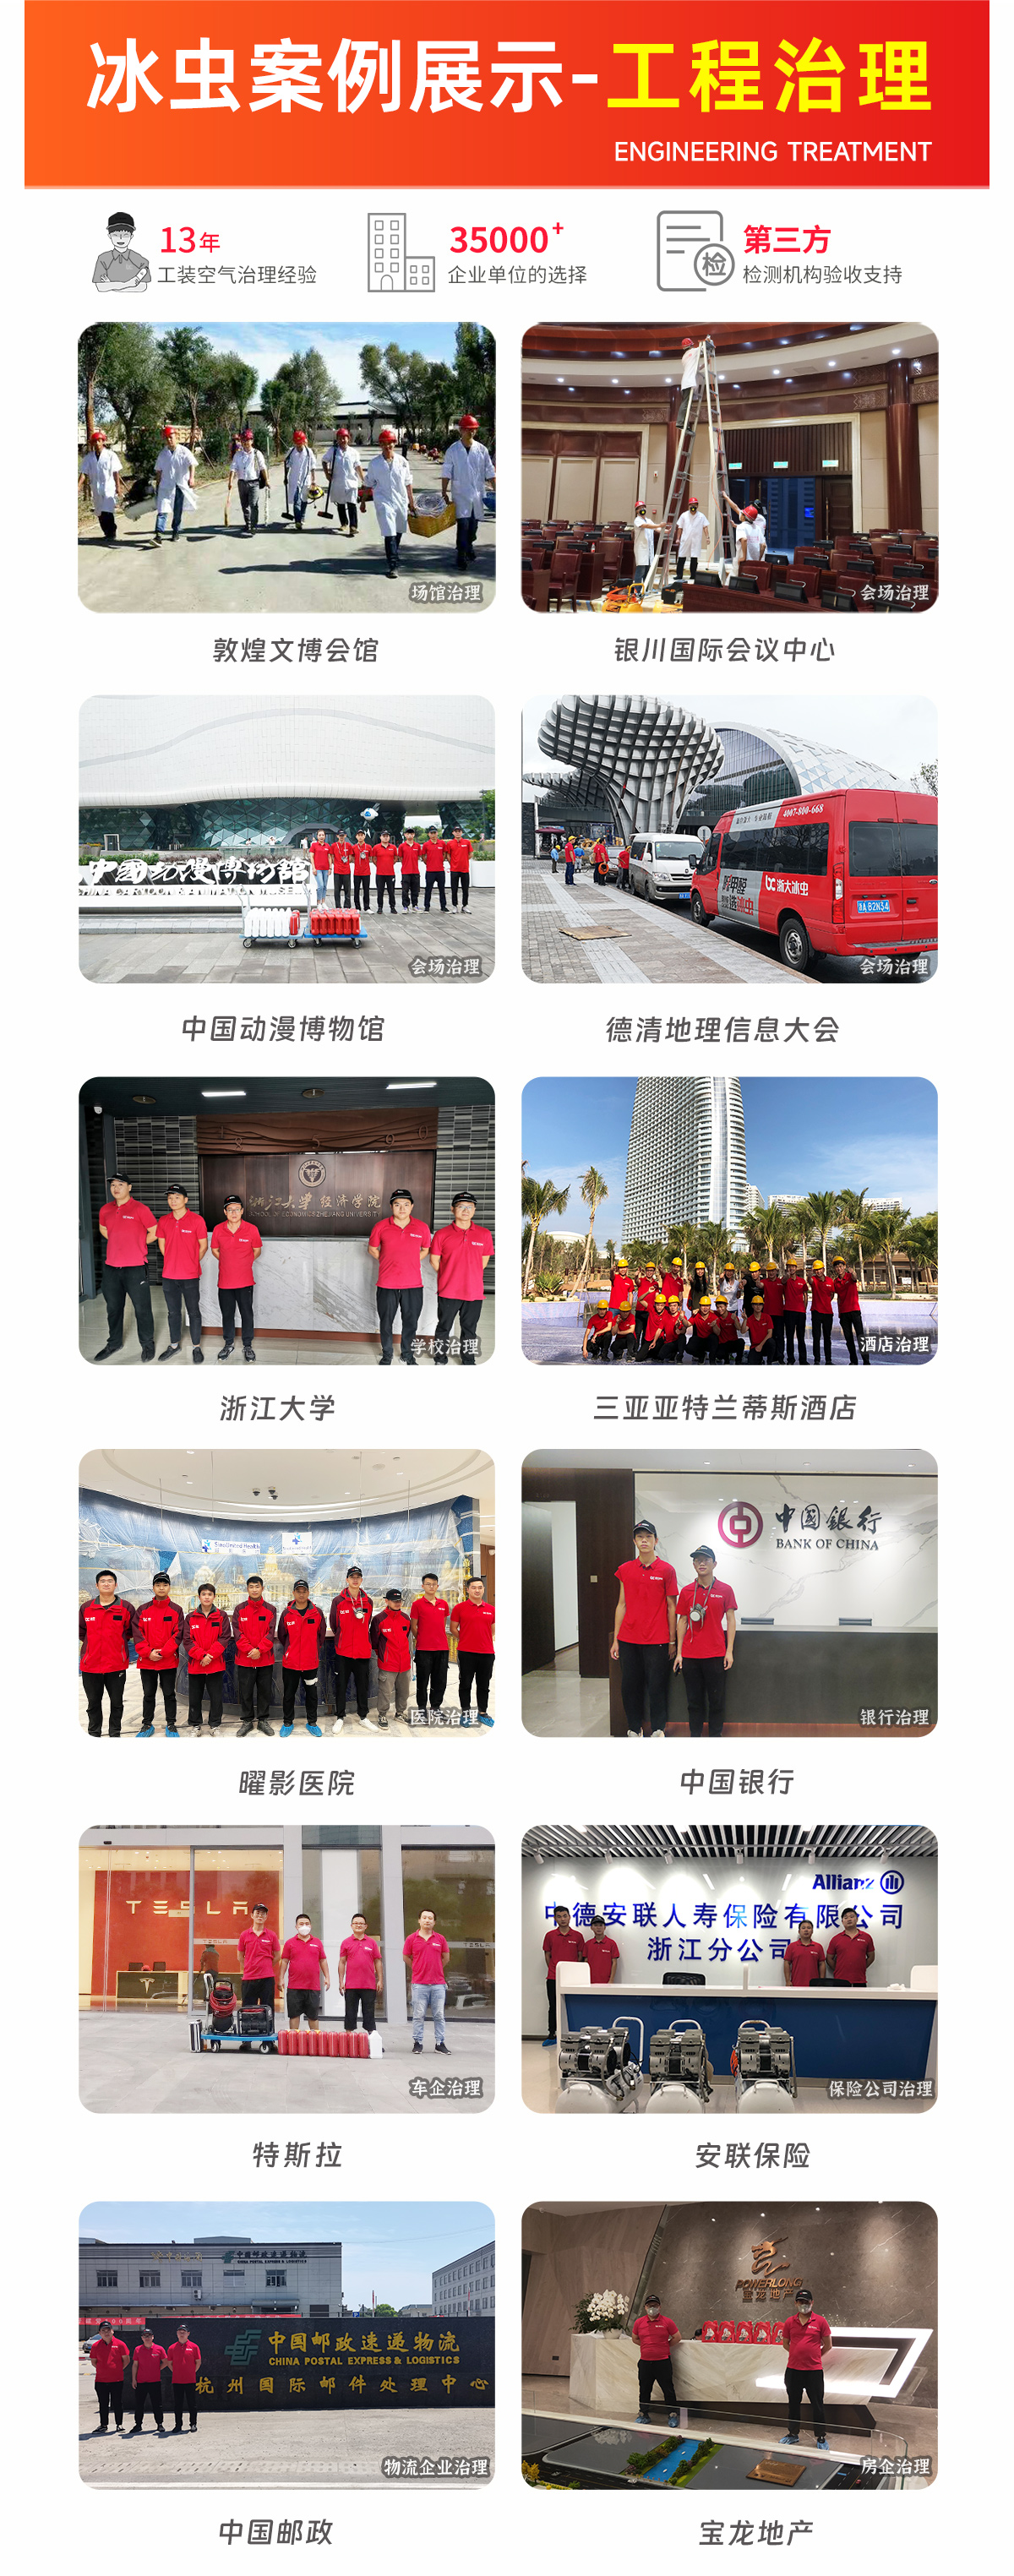 上海除甲醛公司-上海除甲醛-冰虫工程除甲醛案例